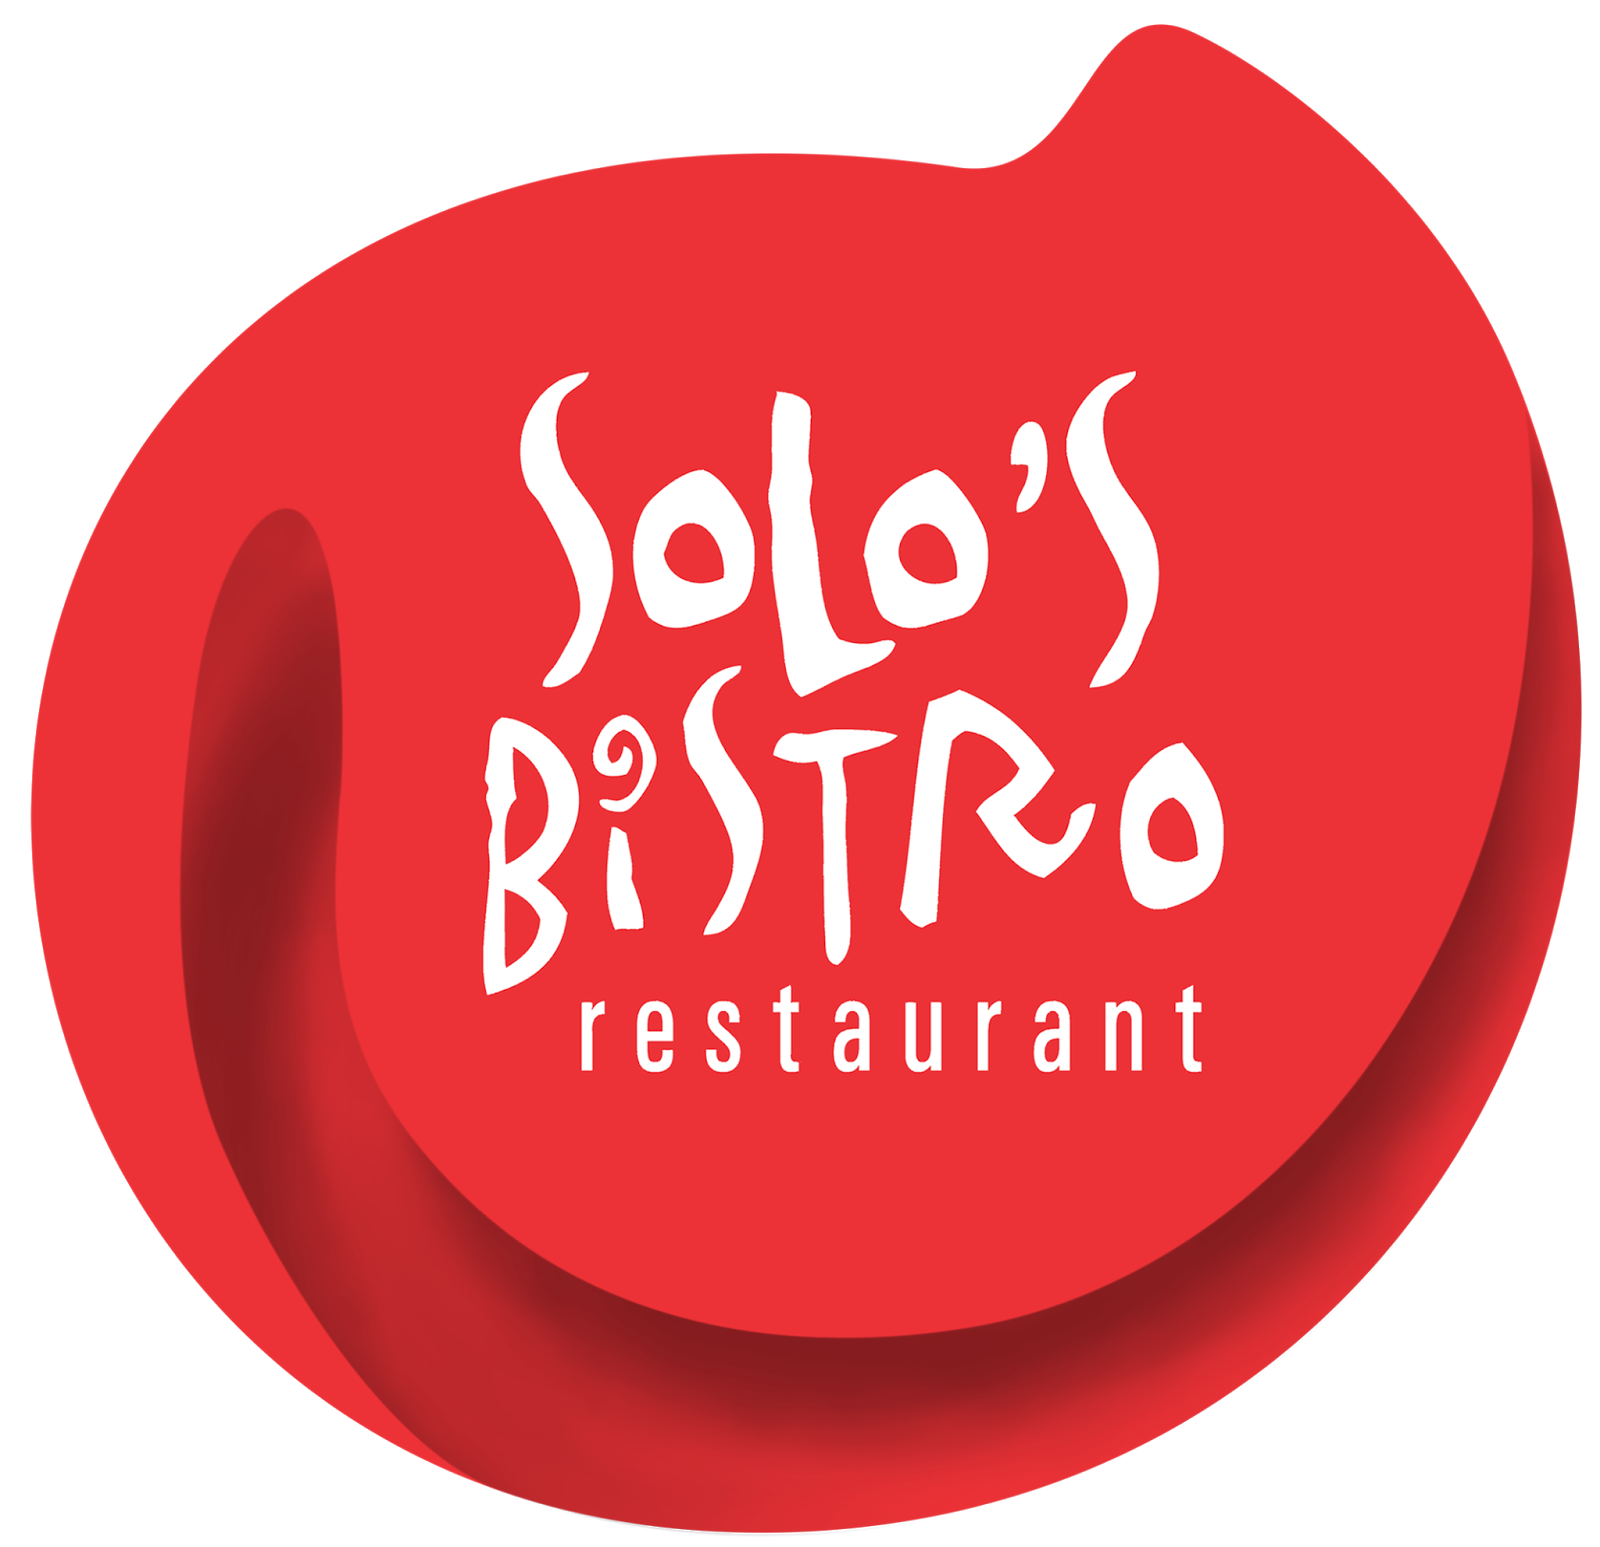 Lowongan Kerja di Solo's Bistro Restoran - Surakarta 